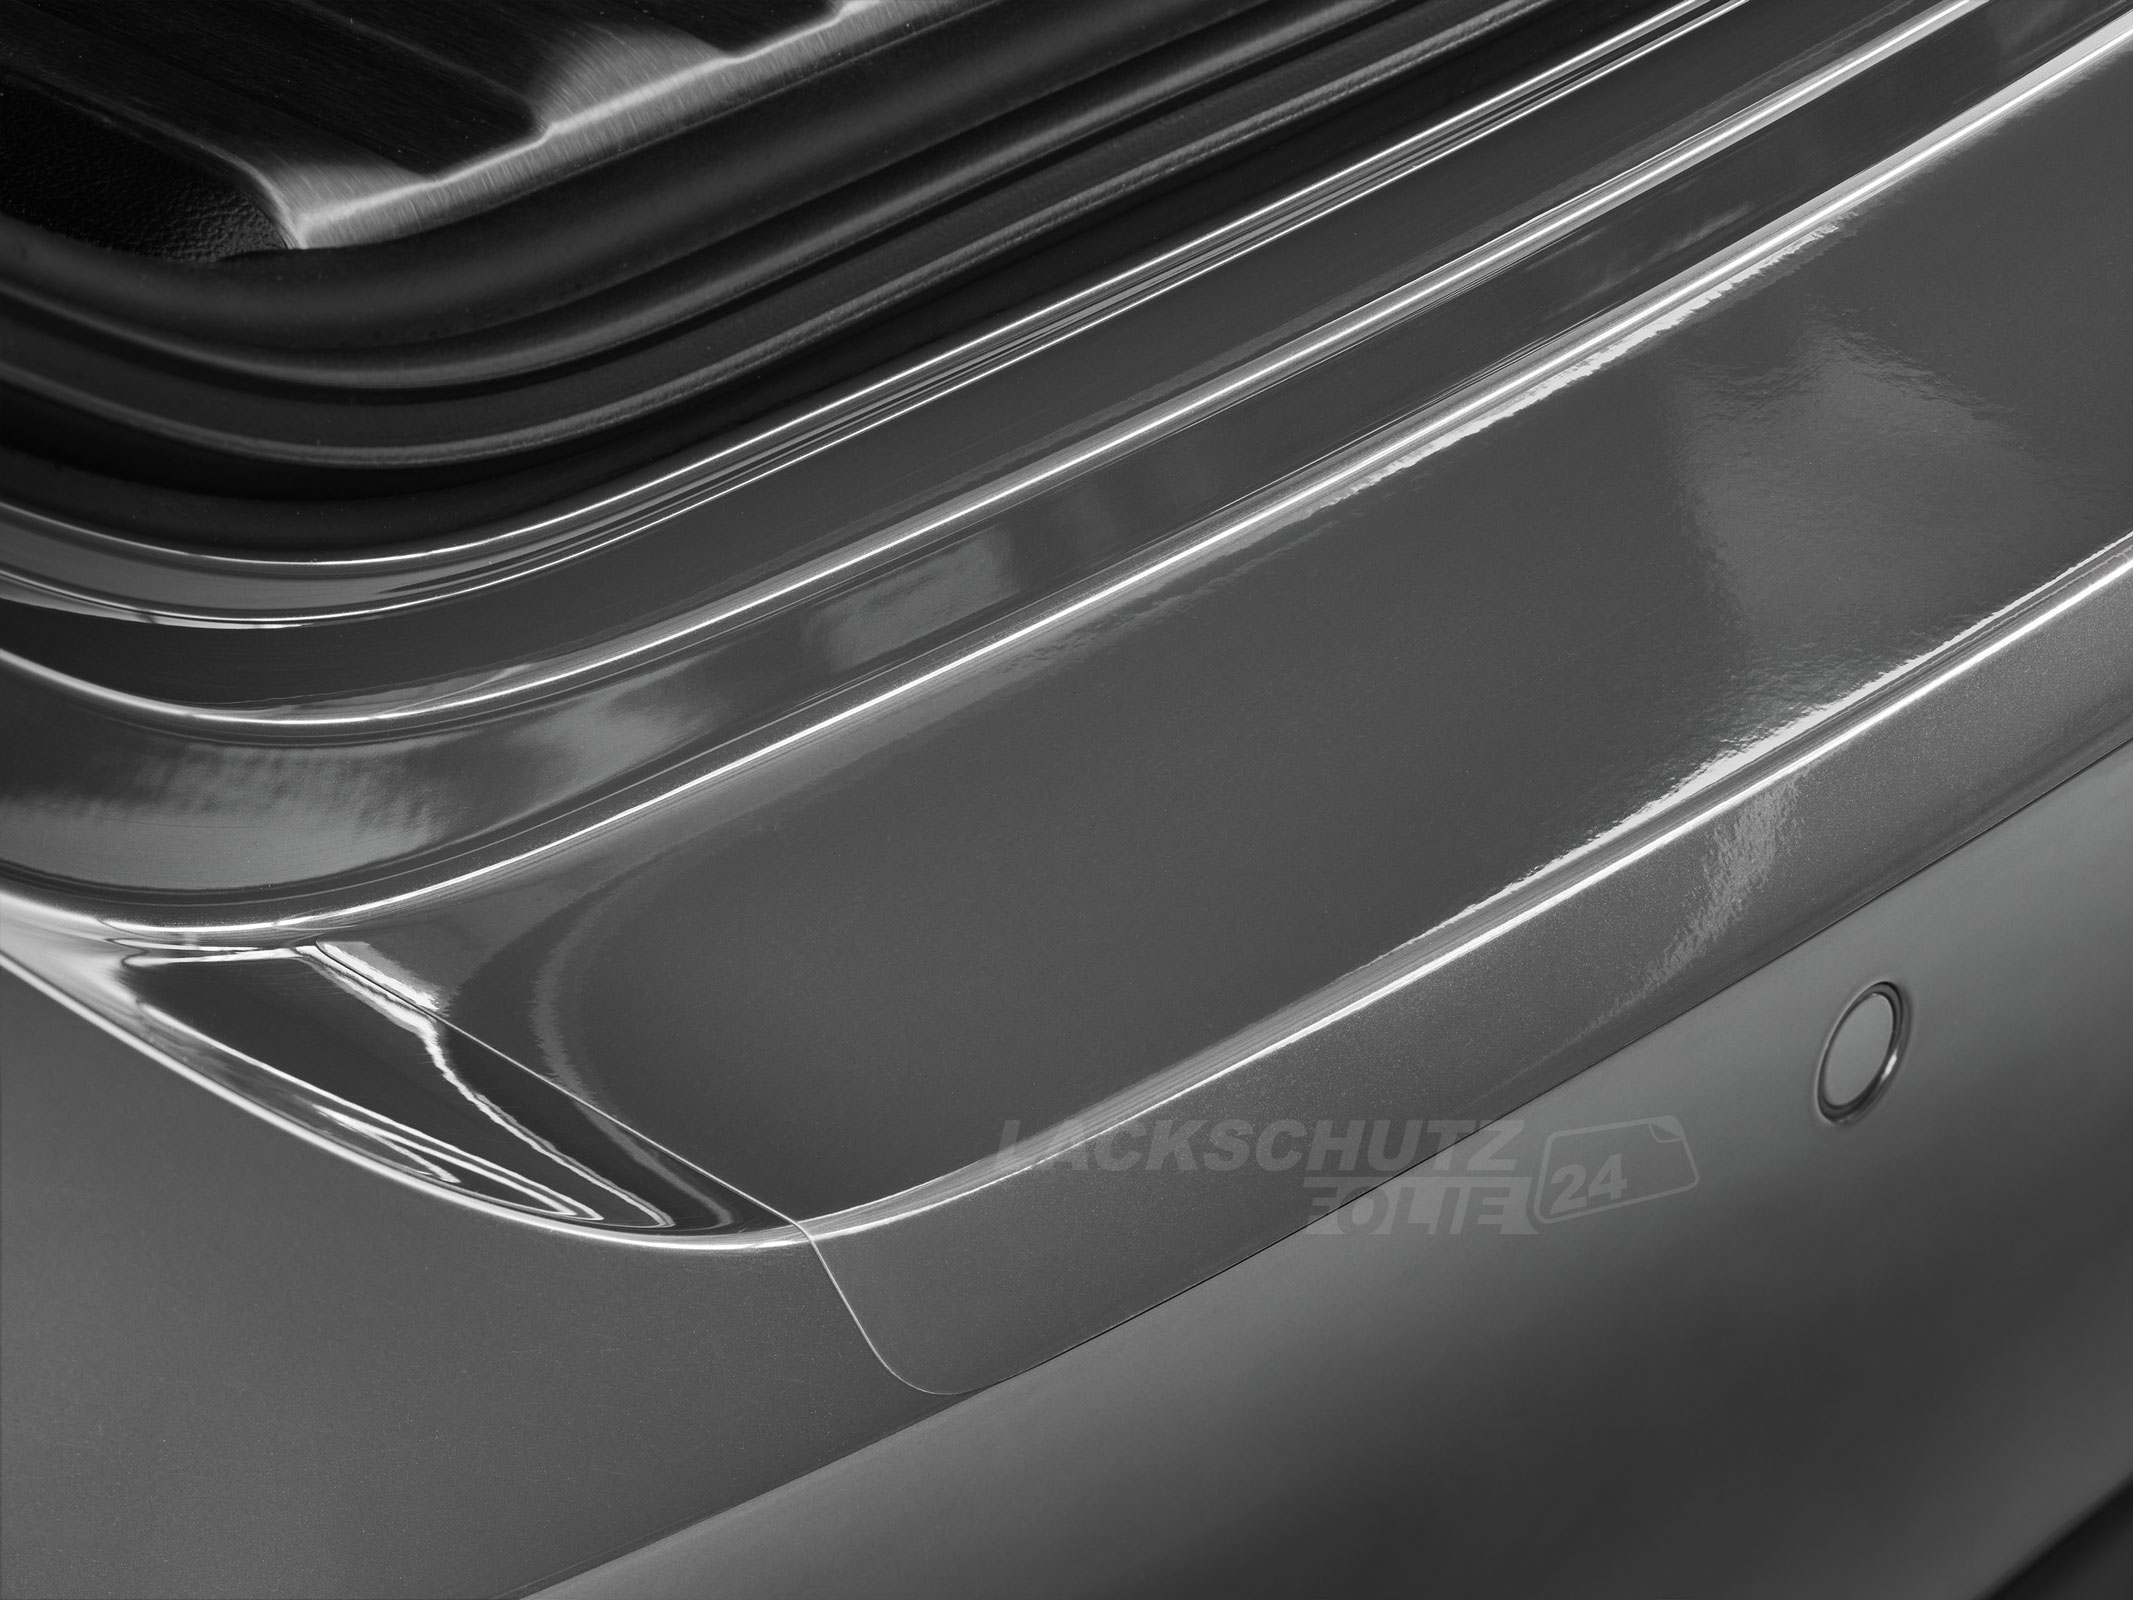 Ladekantenschutzfolie - Transparent Glatt Hochglänzend für Suzuki Swift (IV) Typ MZ/EZ, BJ 2005-2010